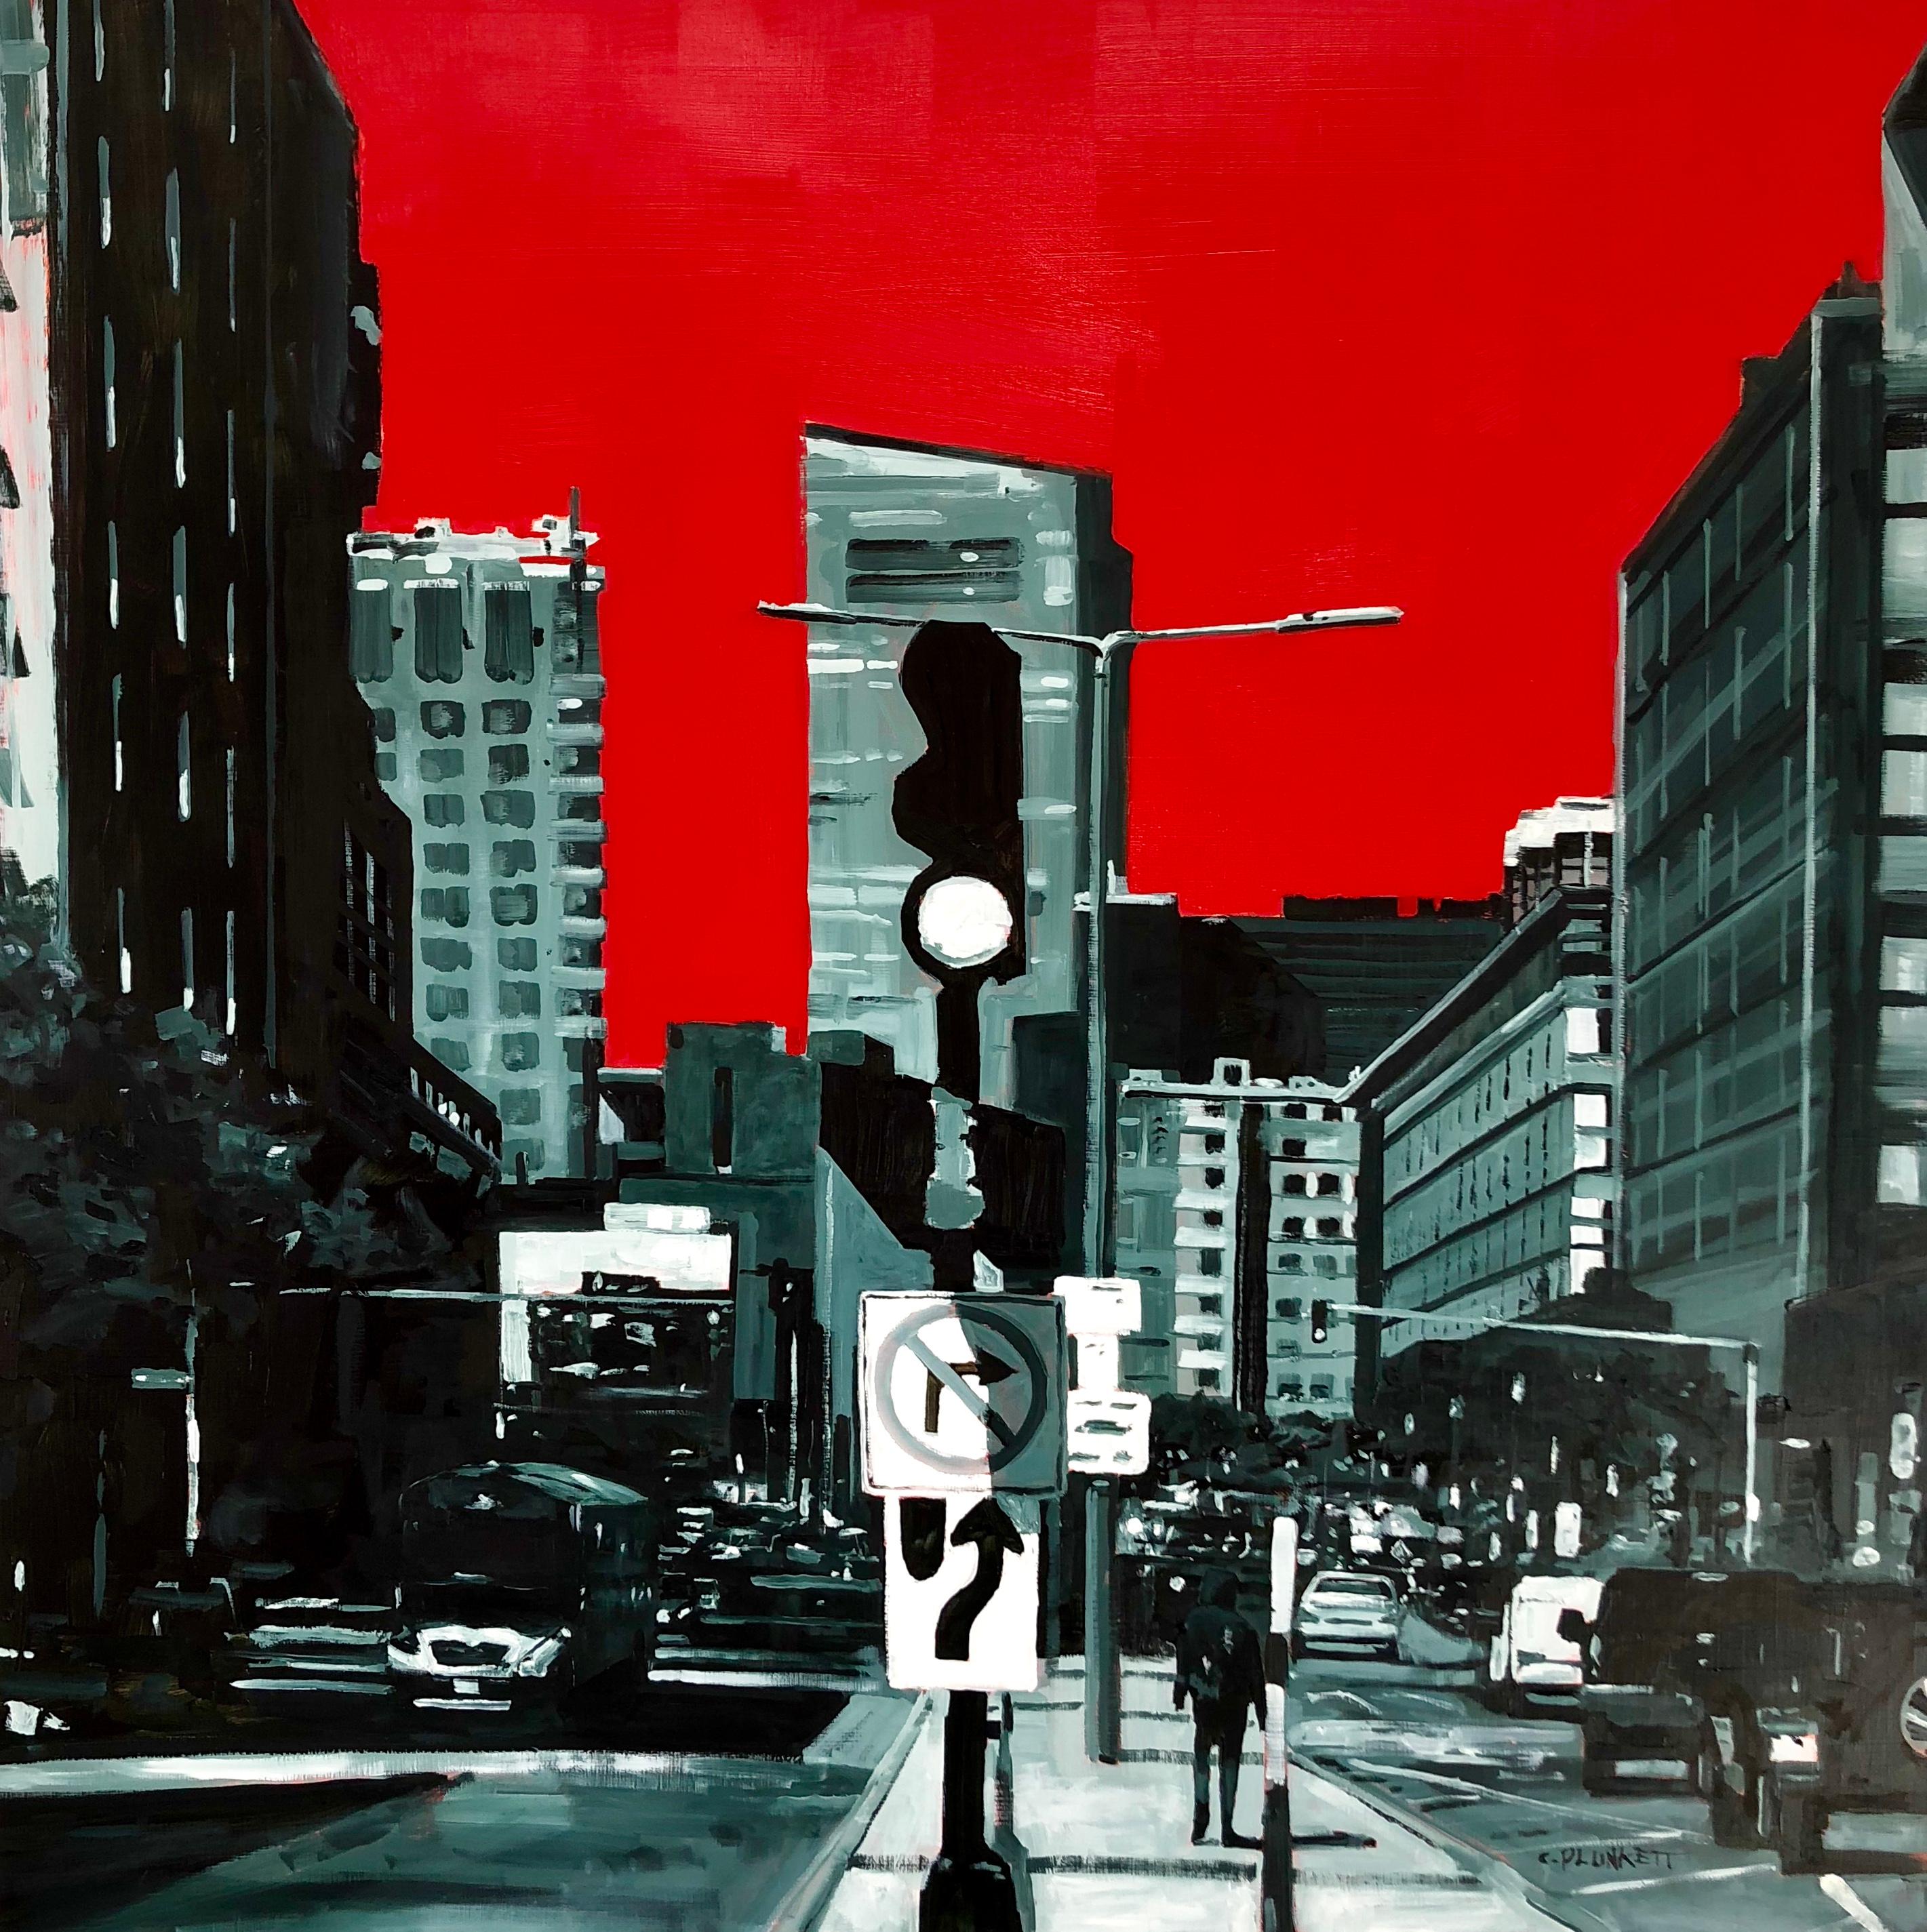 Landscape Painting Chris Plunkett - "East Berkeley and Harrison Ave", paysage urbain, Boston, rouge, noir, peinture à l'huile